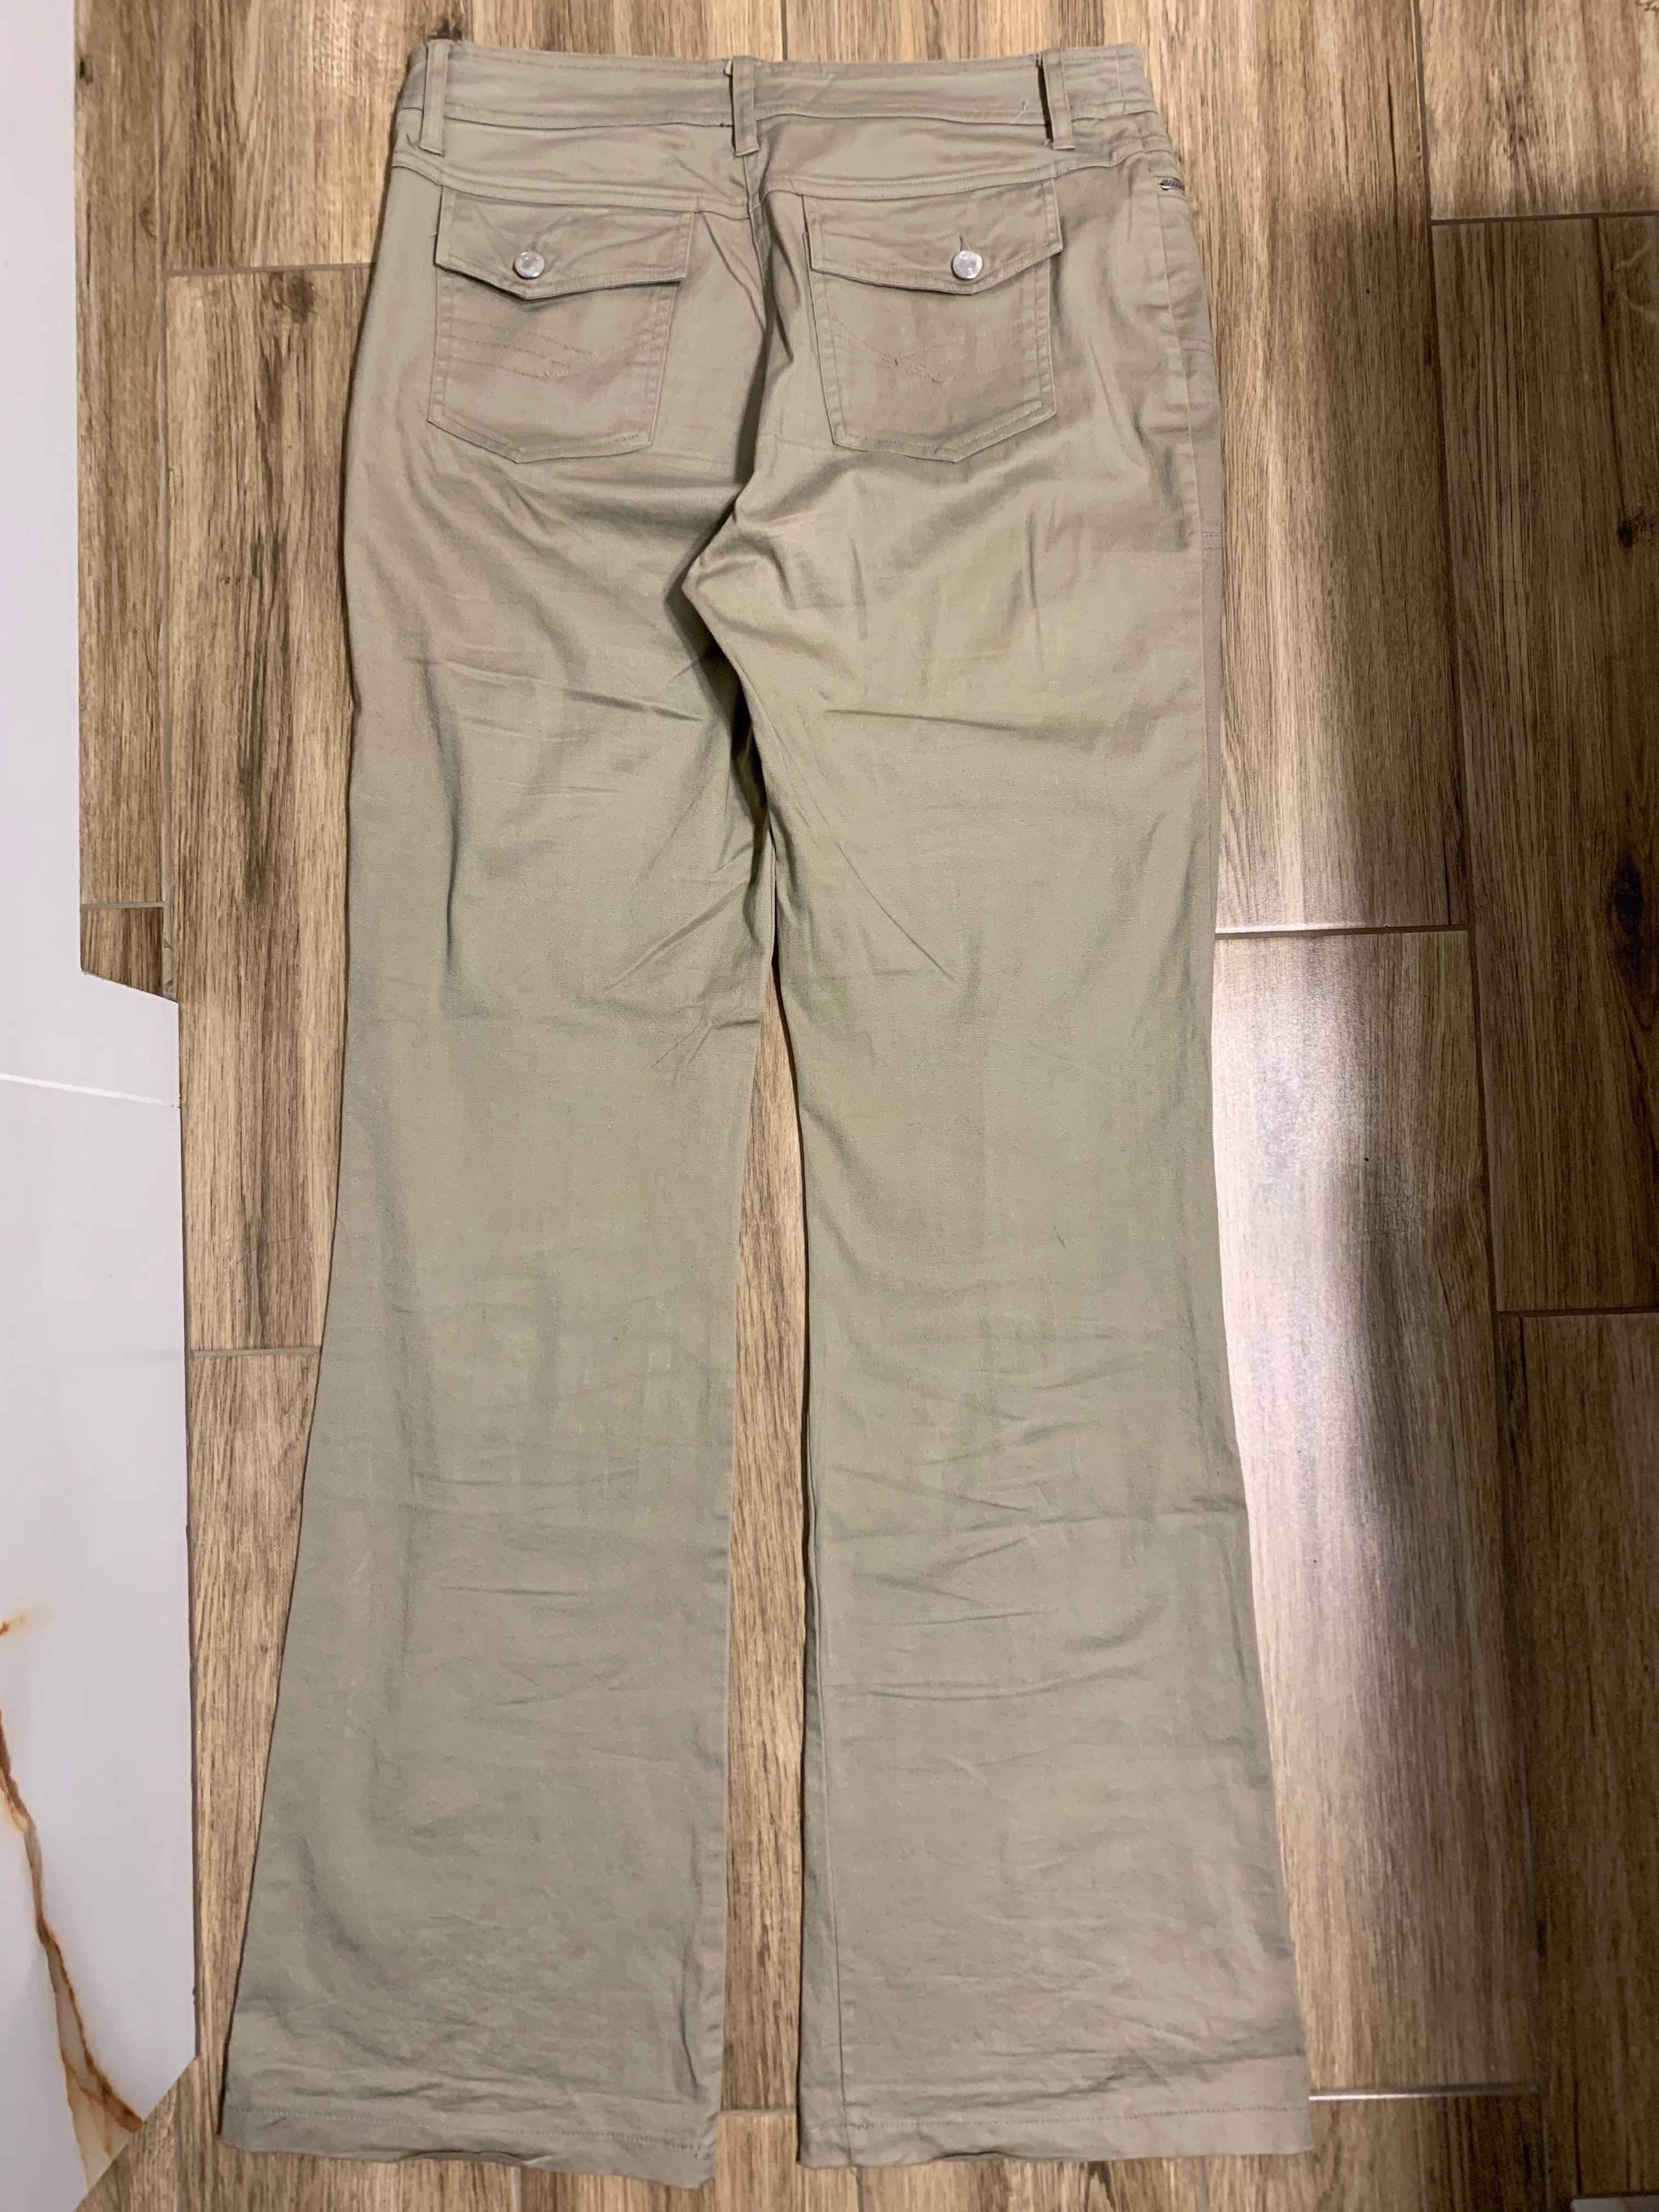 Spodnie dzwony Furcom Jeans w kolorze khaki bawełna roz. L 40